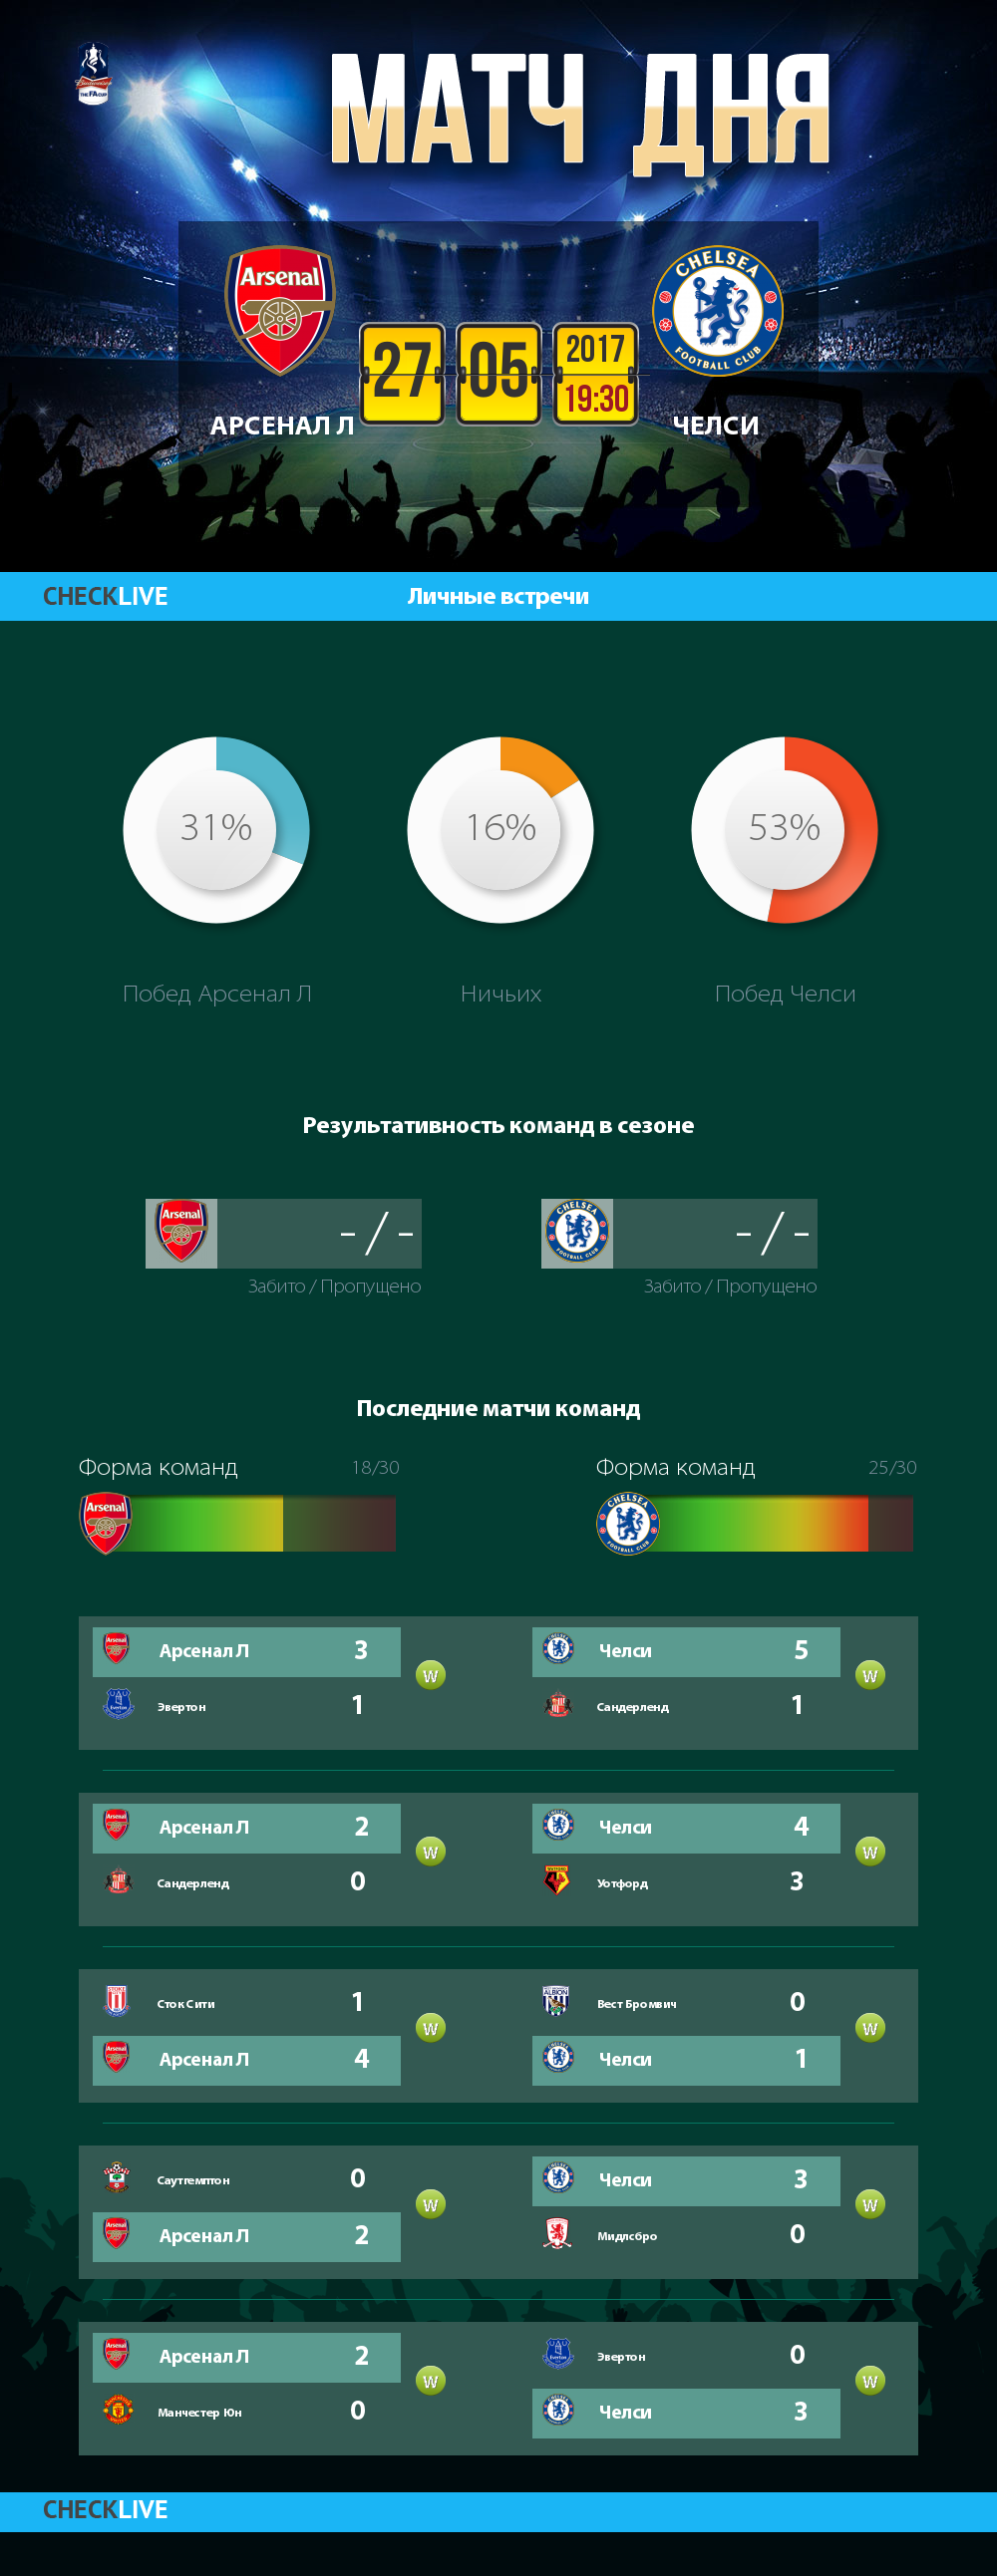 Инфографика Арсенал Л и Челси матч дня 27.05.2017